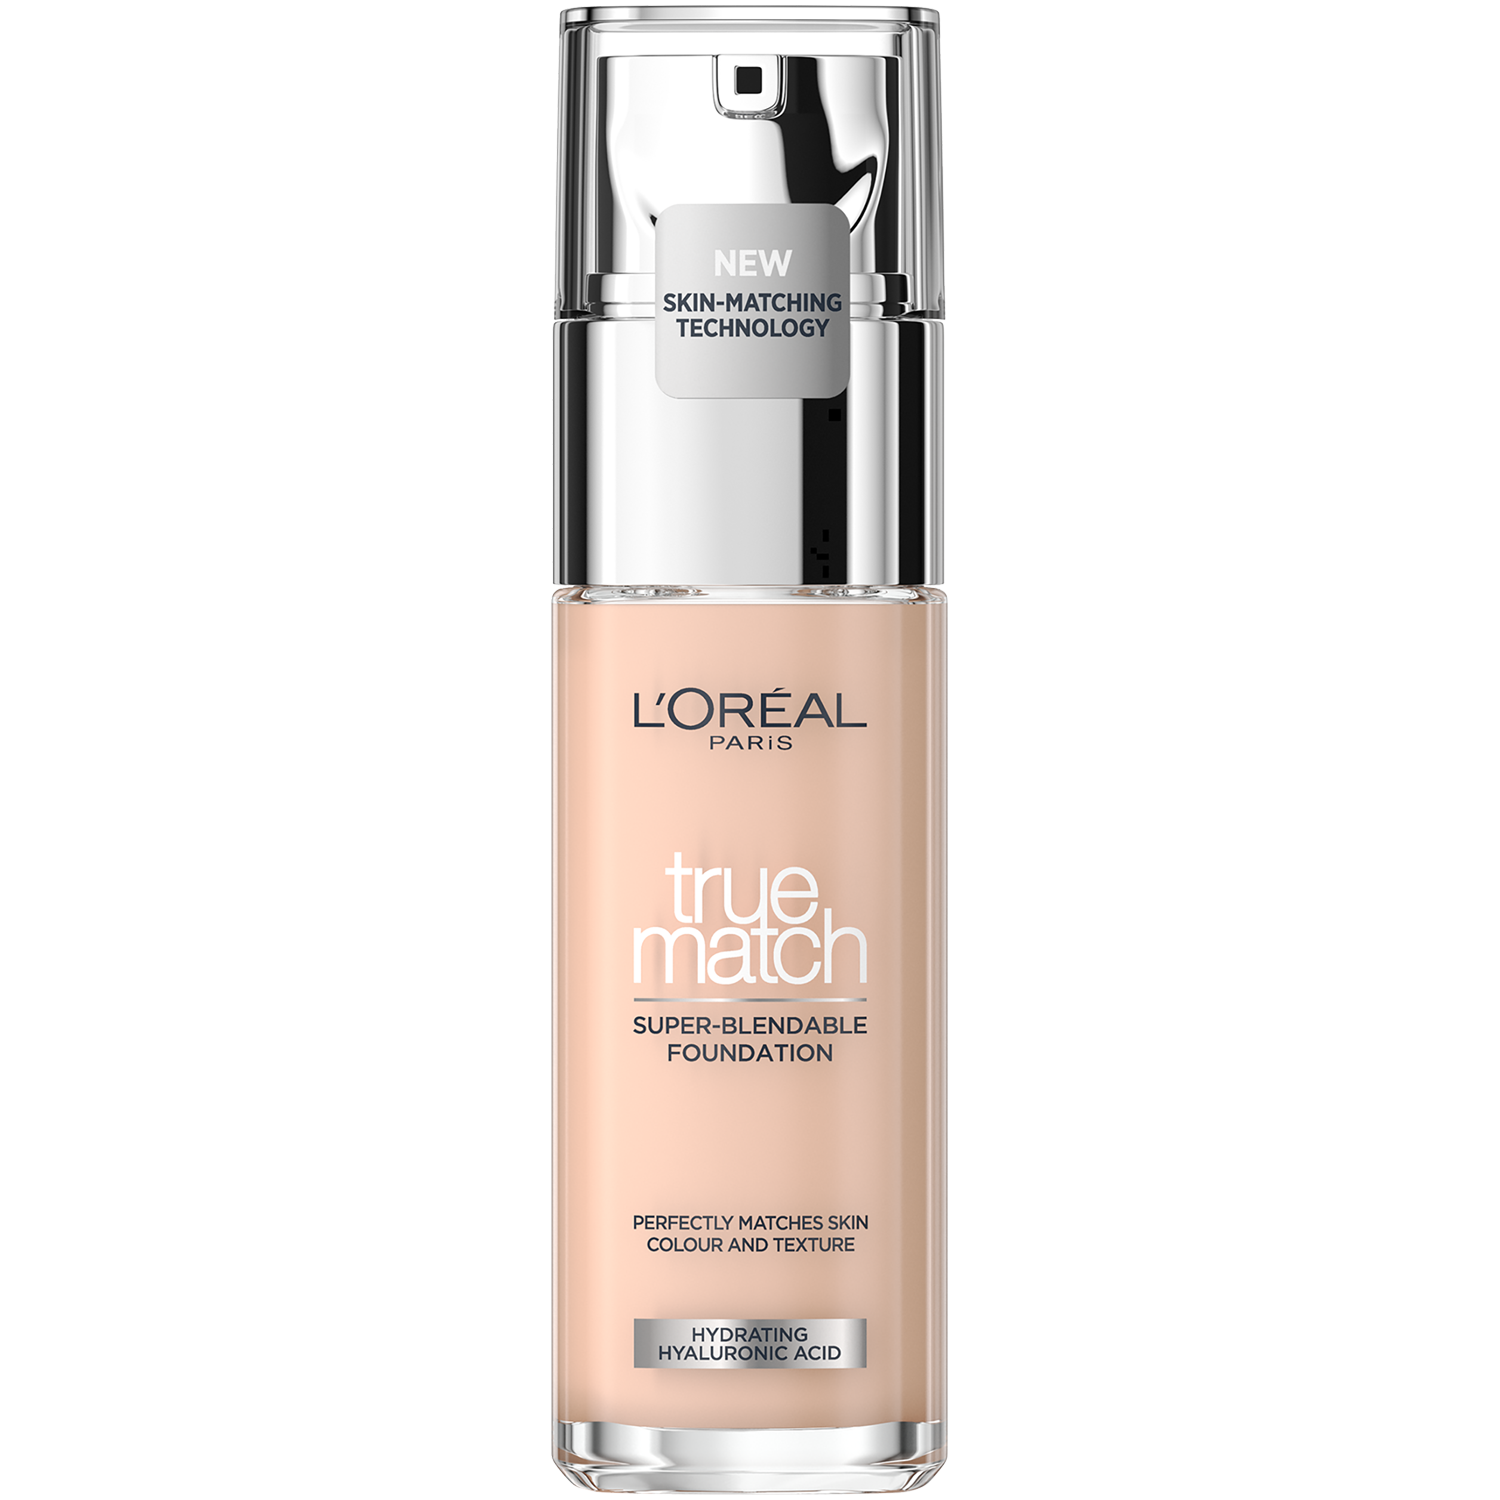 Тональная основа L'Oréal Paris True Match, 30 мл l oreal тональная основа true match healthy luminous makeup spf 20 оттенок мягкий соболиный c6 30 мл